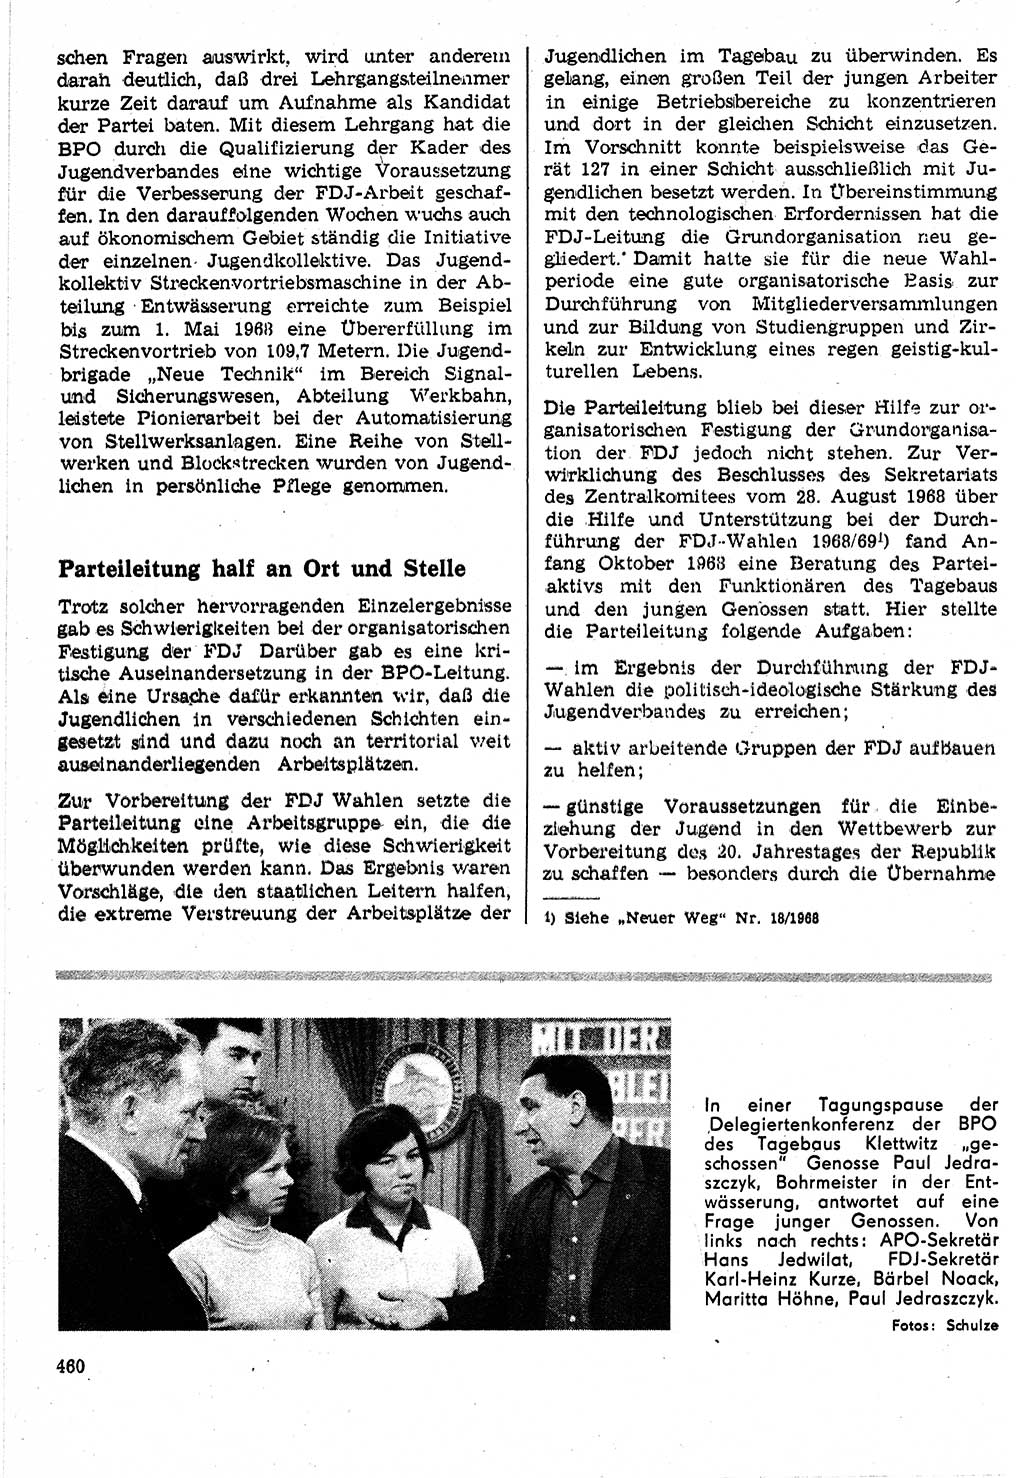 Neuer Weg (NW), Organ des Zentralkomitees (ZK) der SED (Sozialistische Einheitspartei Deutschlands) für Fragen des Parteilebens, 24. Jahrgang [Deutsche Demokratische Republik (DDR)] 1969, Seite 460 (NW ZK SED DDR 1969, S. 460)